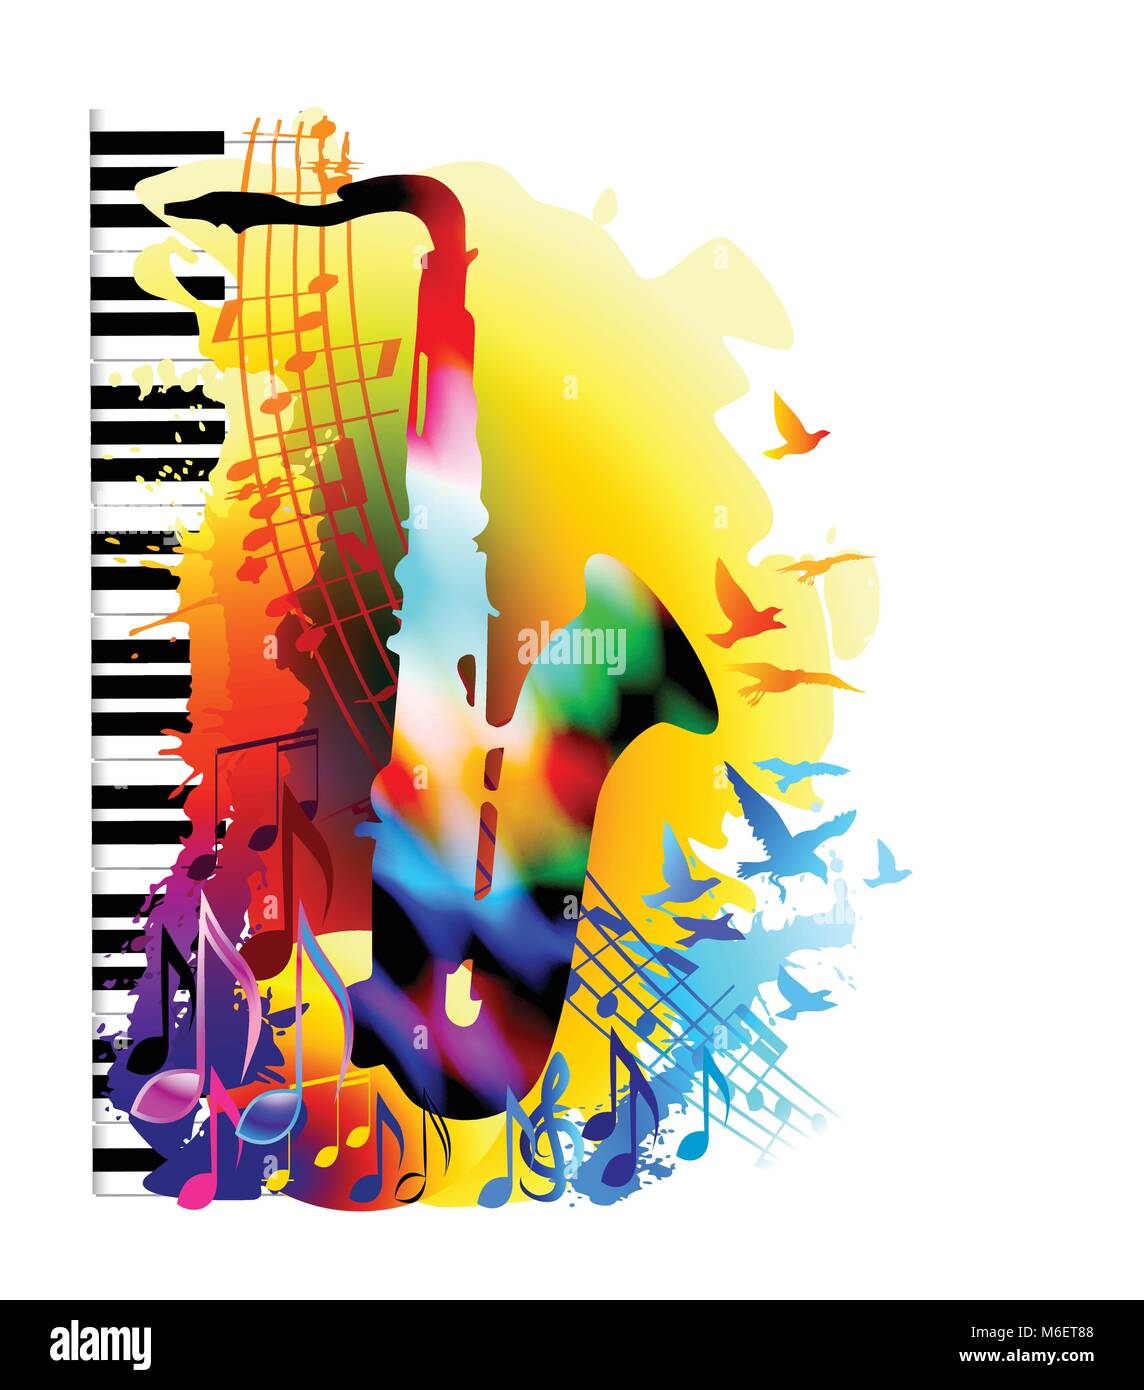 Festival de musique de fond avec le saxophone et les notes de musique. Illustration vecteur de couleur. Peinture numérique Illustration de Vecteur